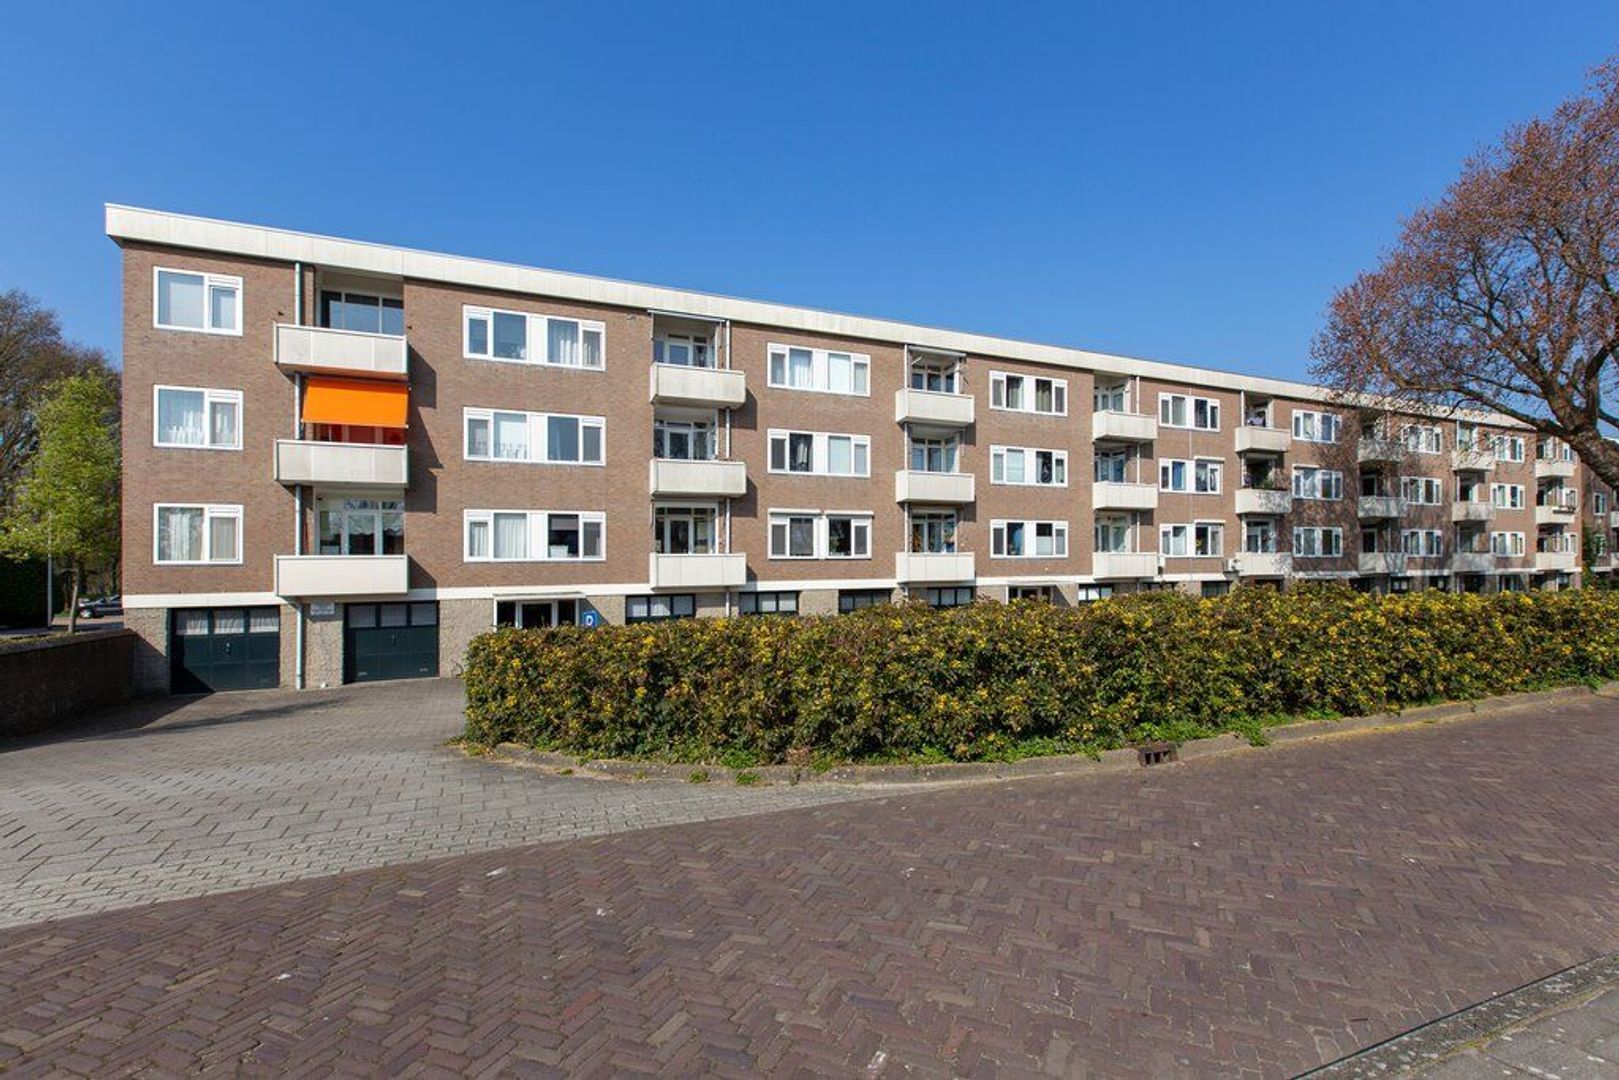 Bekijk foto 1/19 van apartment in Alphen aan den Rijn